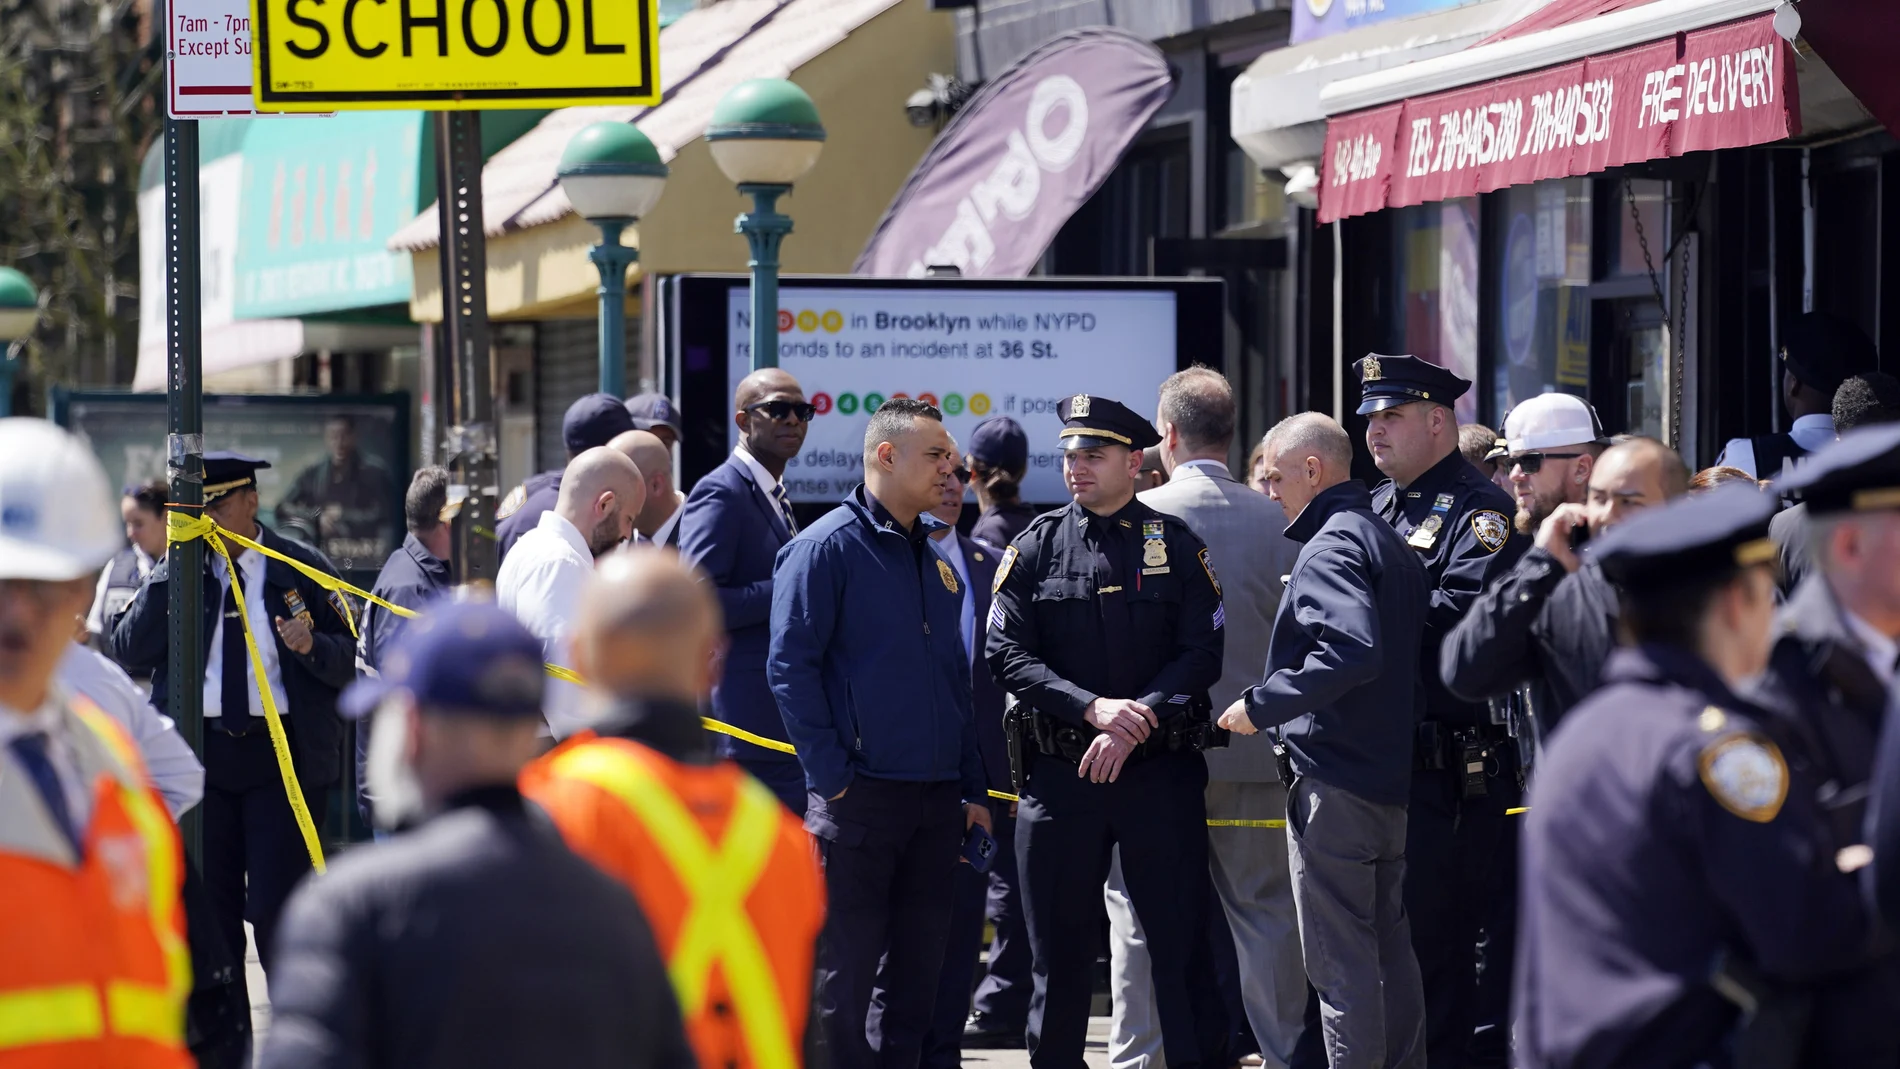 El sospechoso del tiroteo en el metro de Brooklyn ha sido descrito como un hombre negro, de aproximadamente 1,70 de altura y complexión fuerte